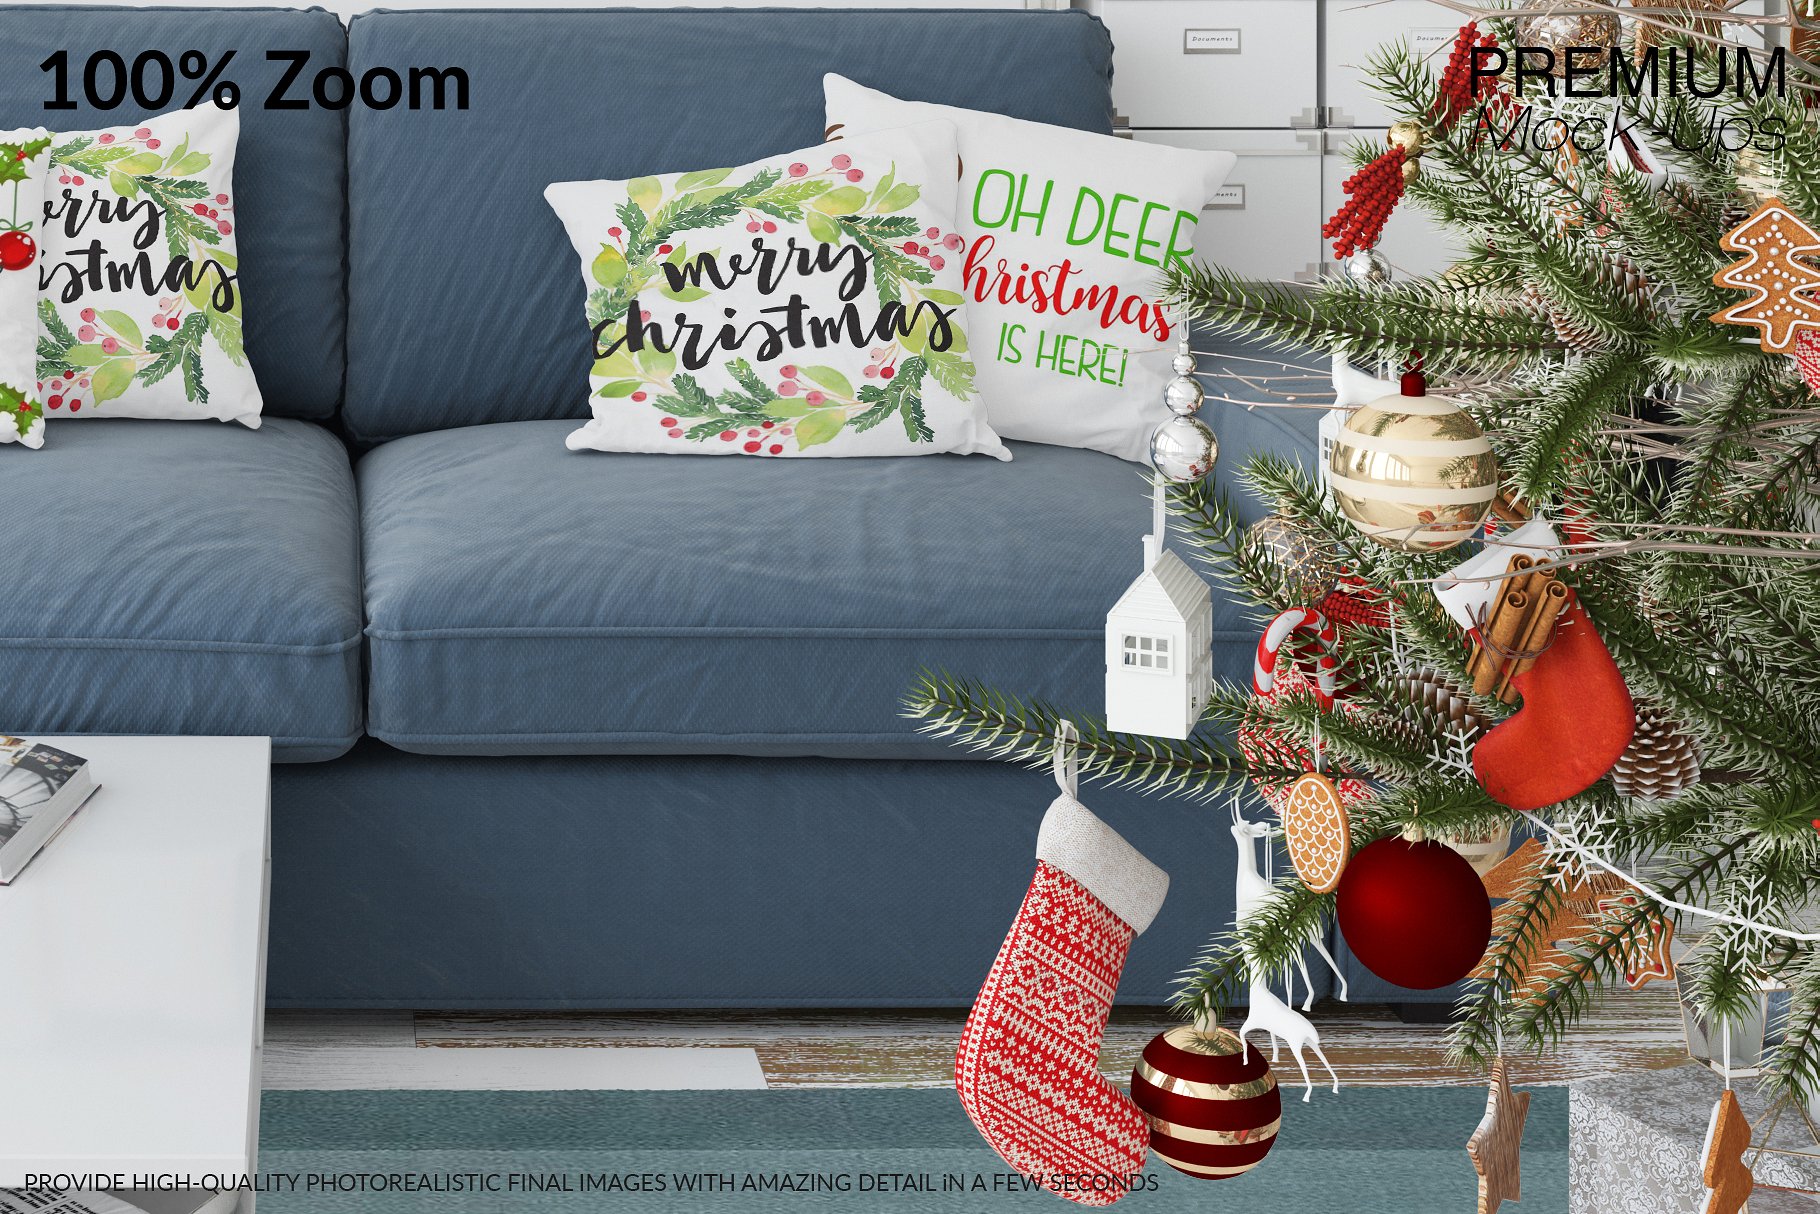 圣诞节客厅装饰展示样机套装 Christmas Living Room Set [psd,jpg]插图(14)